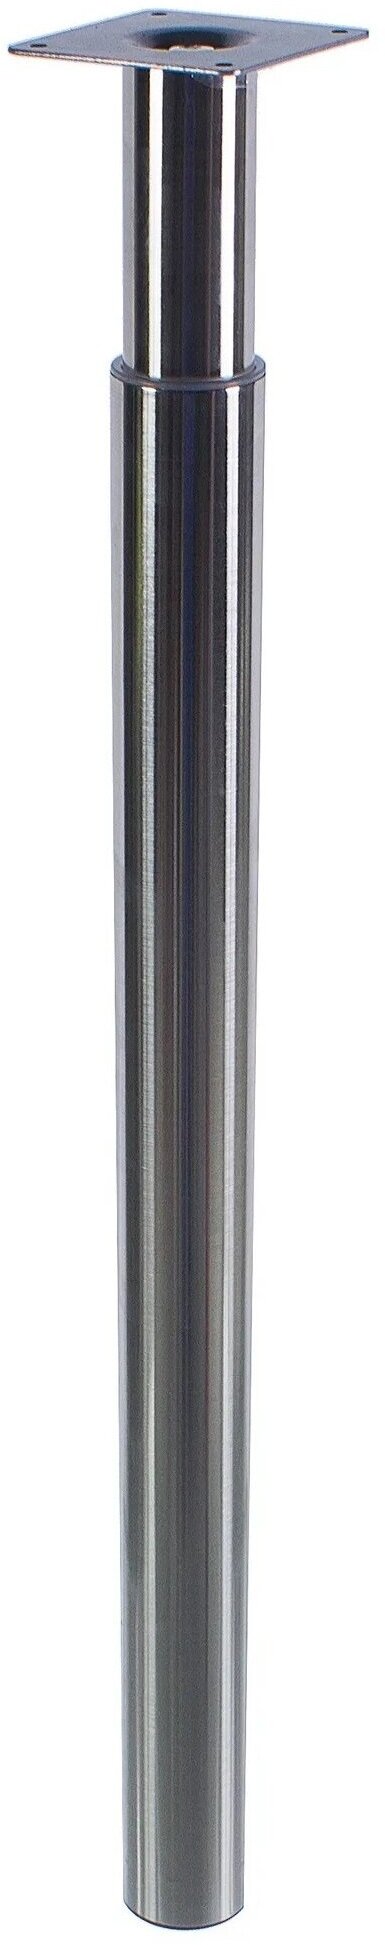 Опора-ножка телескопическая регулируемая 70-110 см стальная цвет никель для монтажа столешницы на удобной для вас высоте